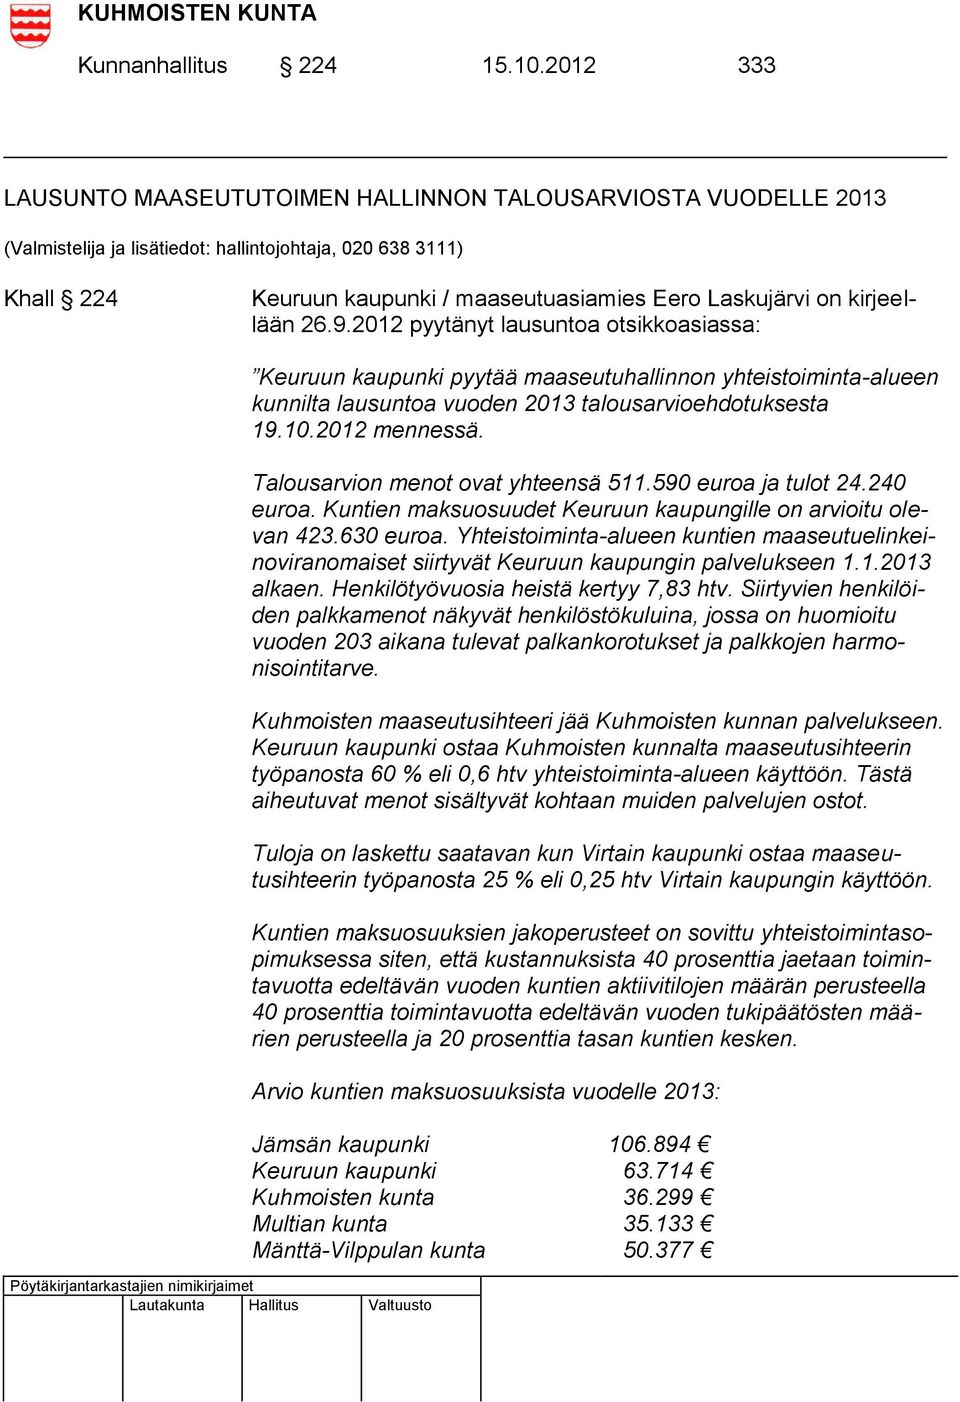 kirjeellään 26.9.2012 pyytänyt lausuntoa otsikkoasiassa: Keuruun kaupunki pyytää maaseutuhallinnon yhteistoiminta-alueen kunnilta lausuntoa vuoden 2013 talousarvioehdotuksesta 19.10.2012 mennessä.